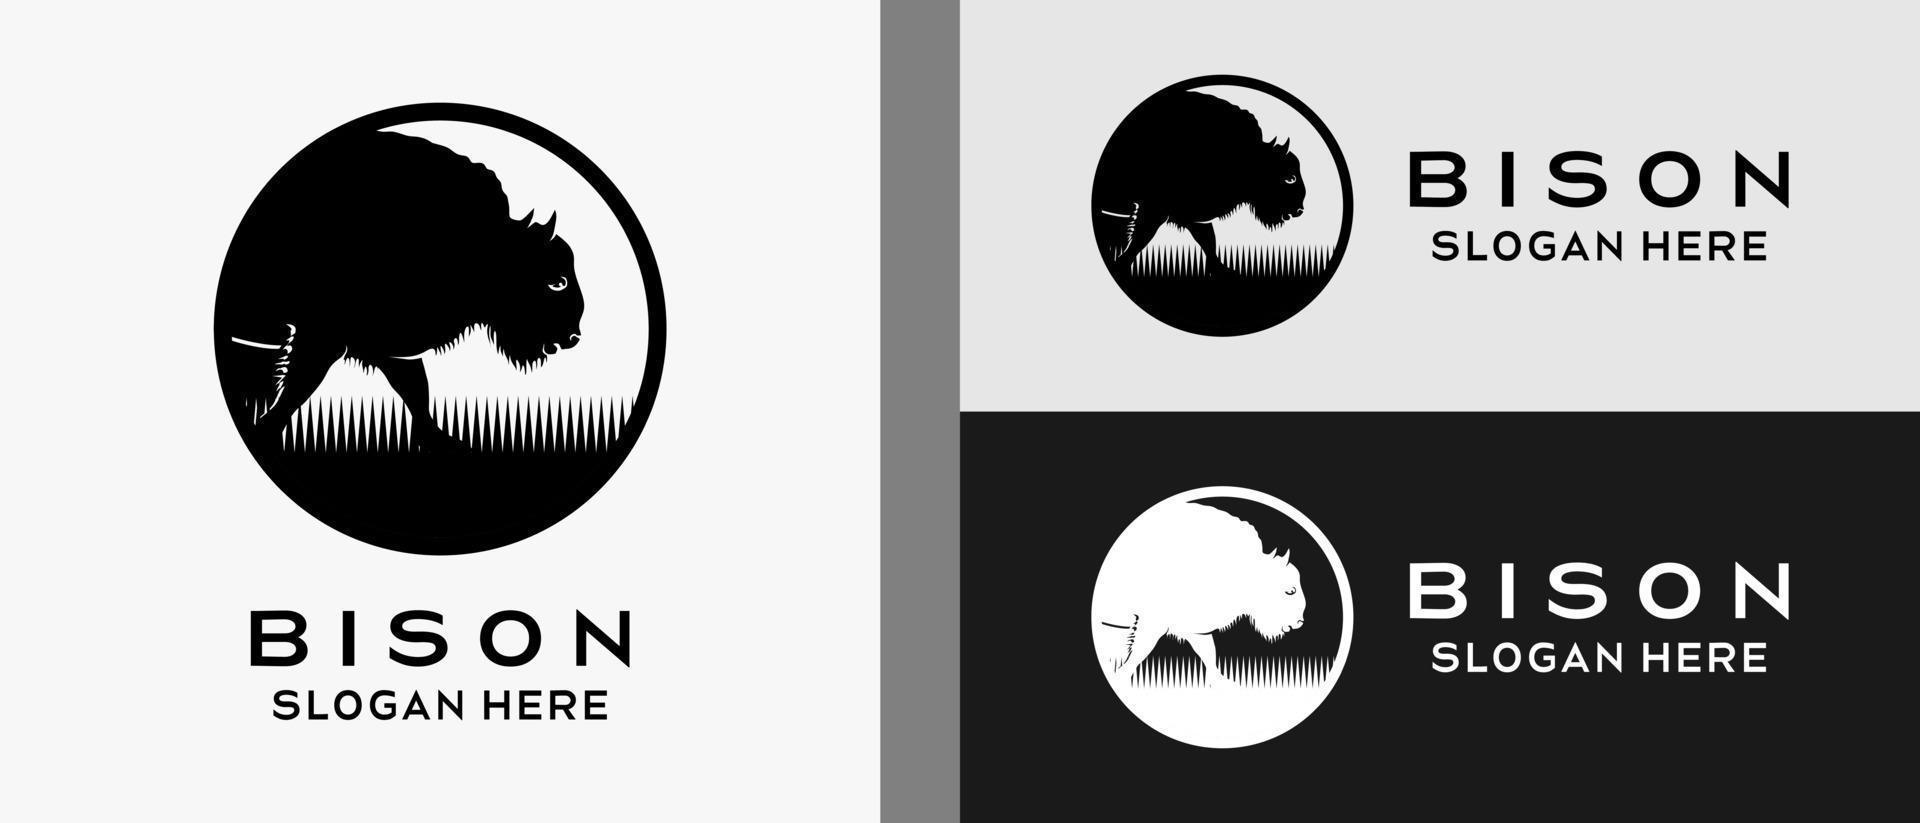 modelo de design de logotipo de bisonte com silhueta em círculo. vetor premium